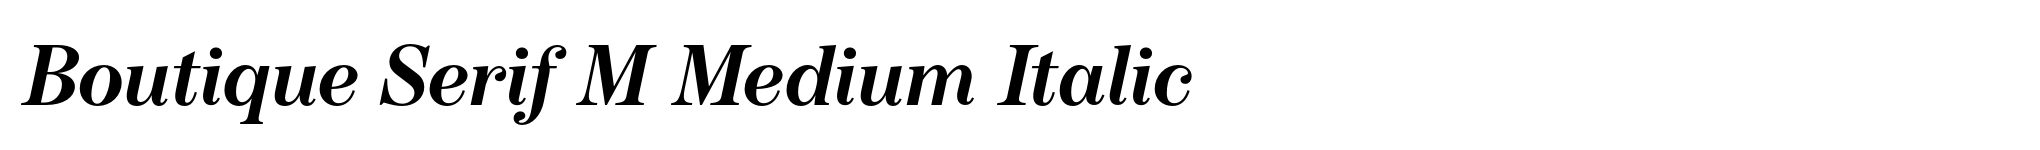 Boutique Serif M Medium Italic image